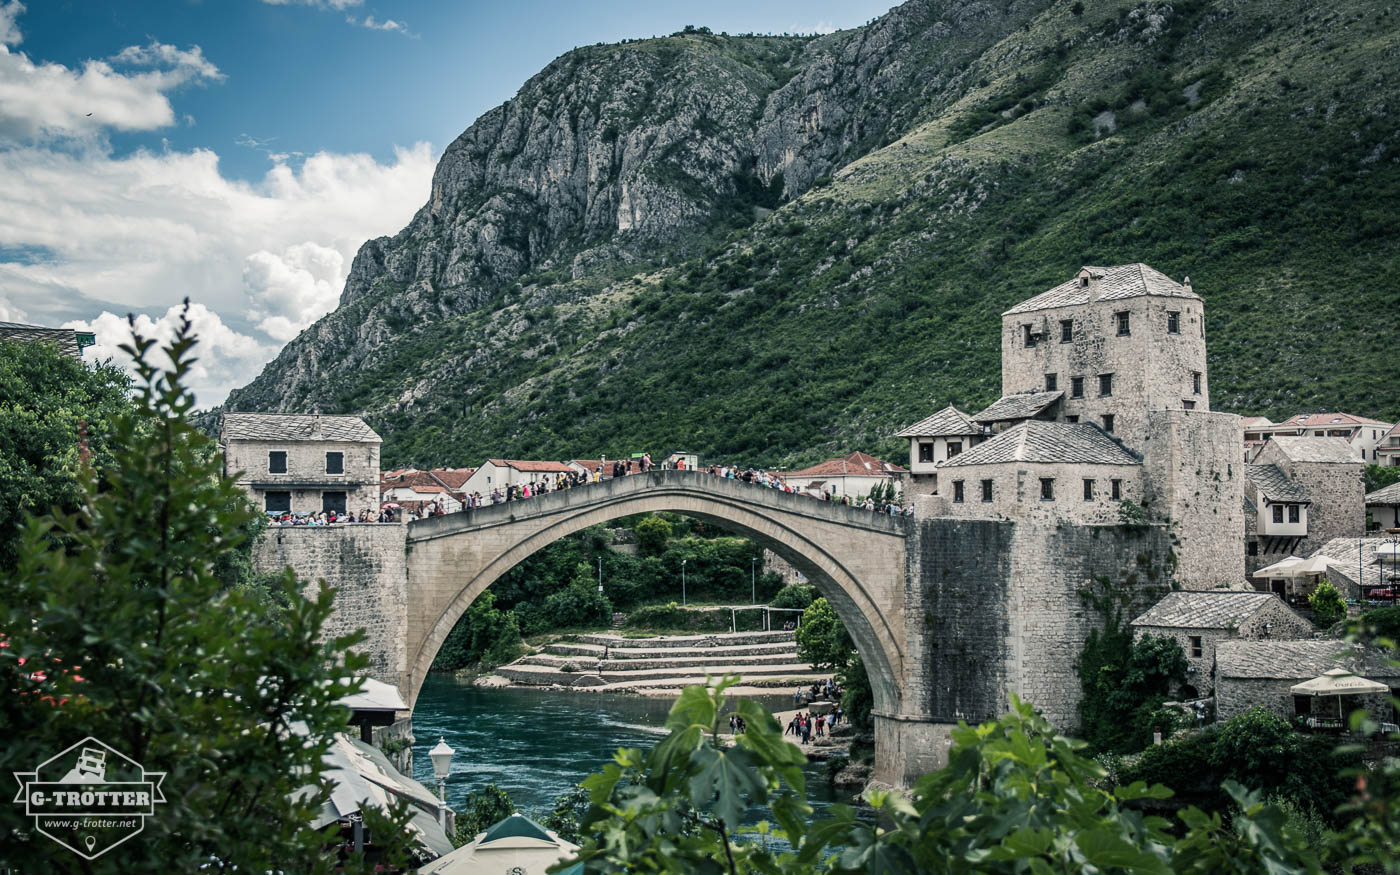 Bild 4 der Bildergalerie “Ein kleines Stück Bosnien Herzegovina”